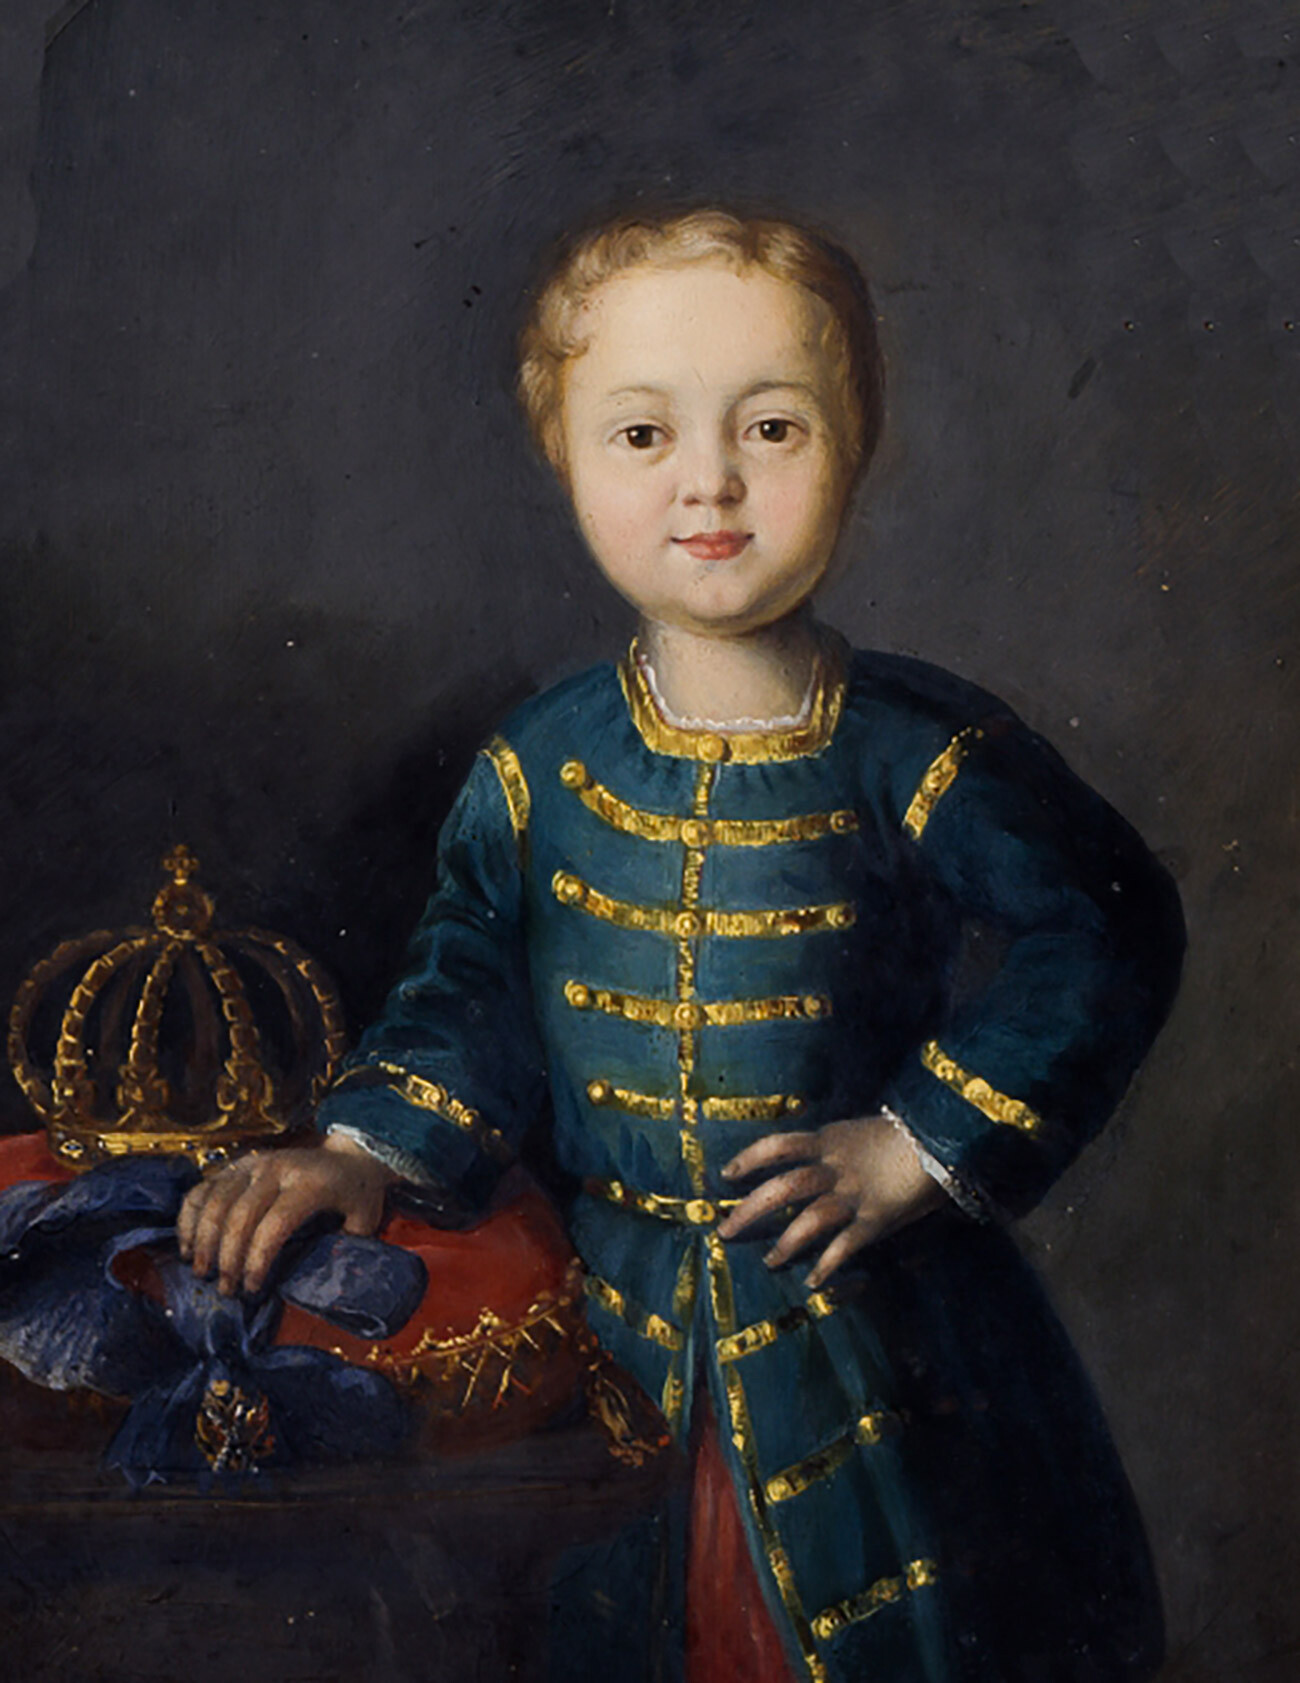 Porträt des Zaren von Russland Iwan VI. Antonowitsch (1740 - 1764)ю